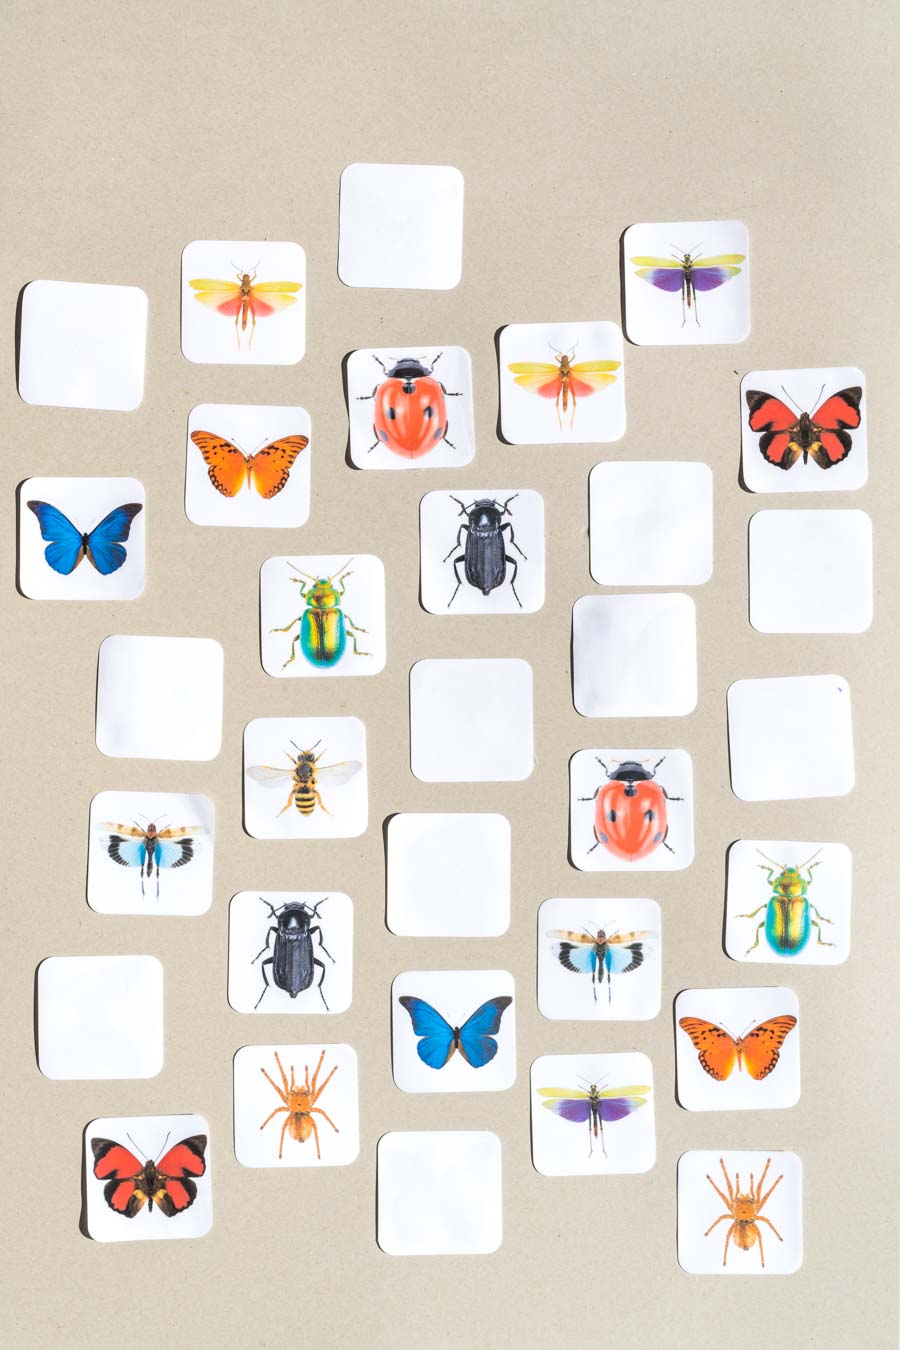 Druckvorlage Insekten Spiel • Spielidee für Kleinkinder • Insekten Memory • Zuordnen lernen ✓ Jetzt Abo lösen & Druckvorlage downloaden